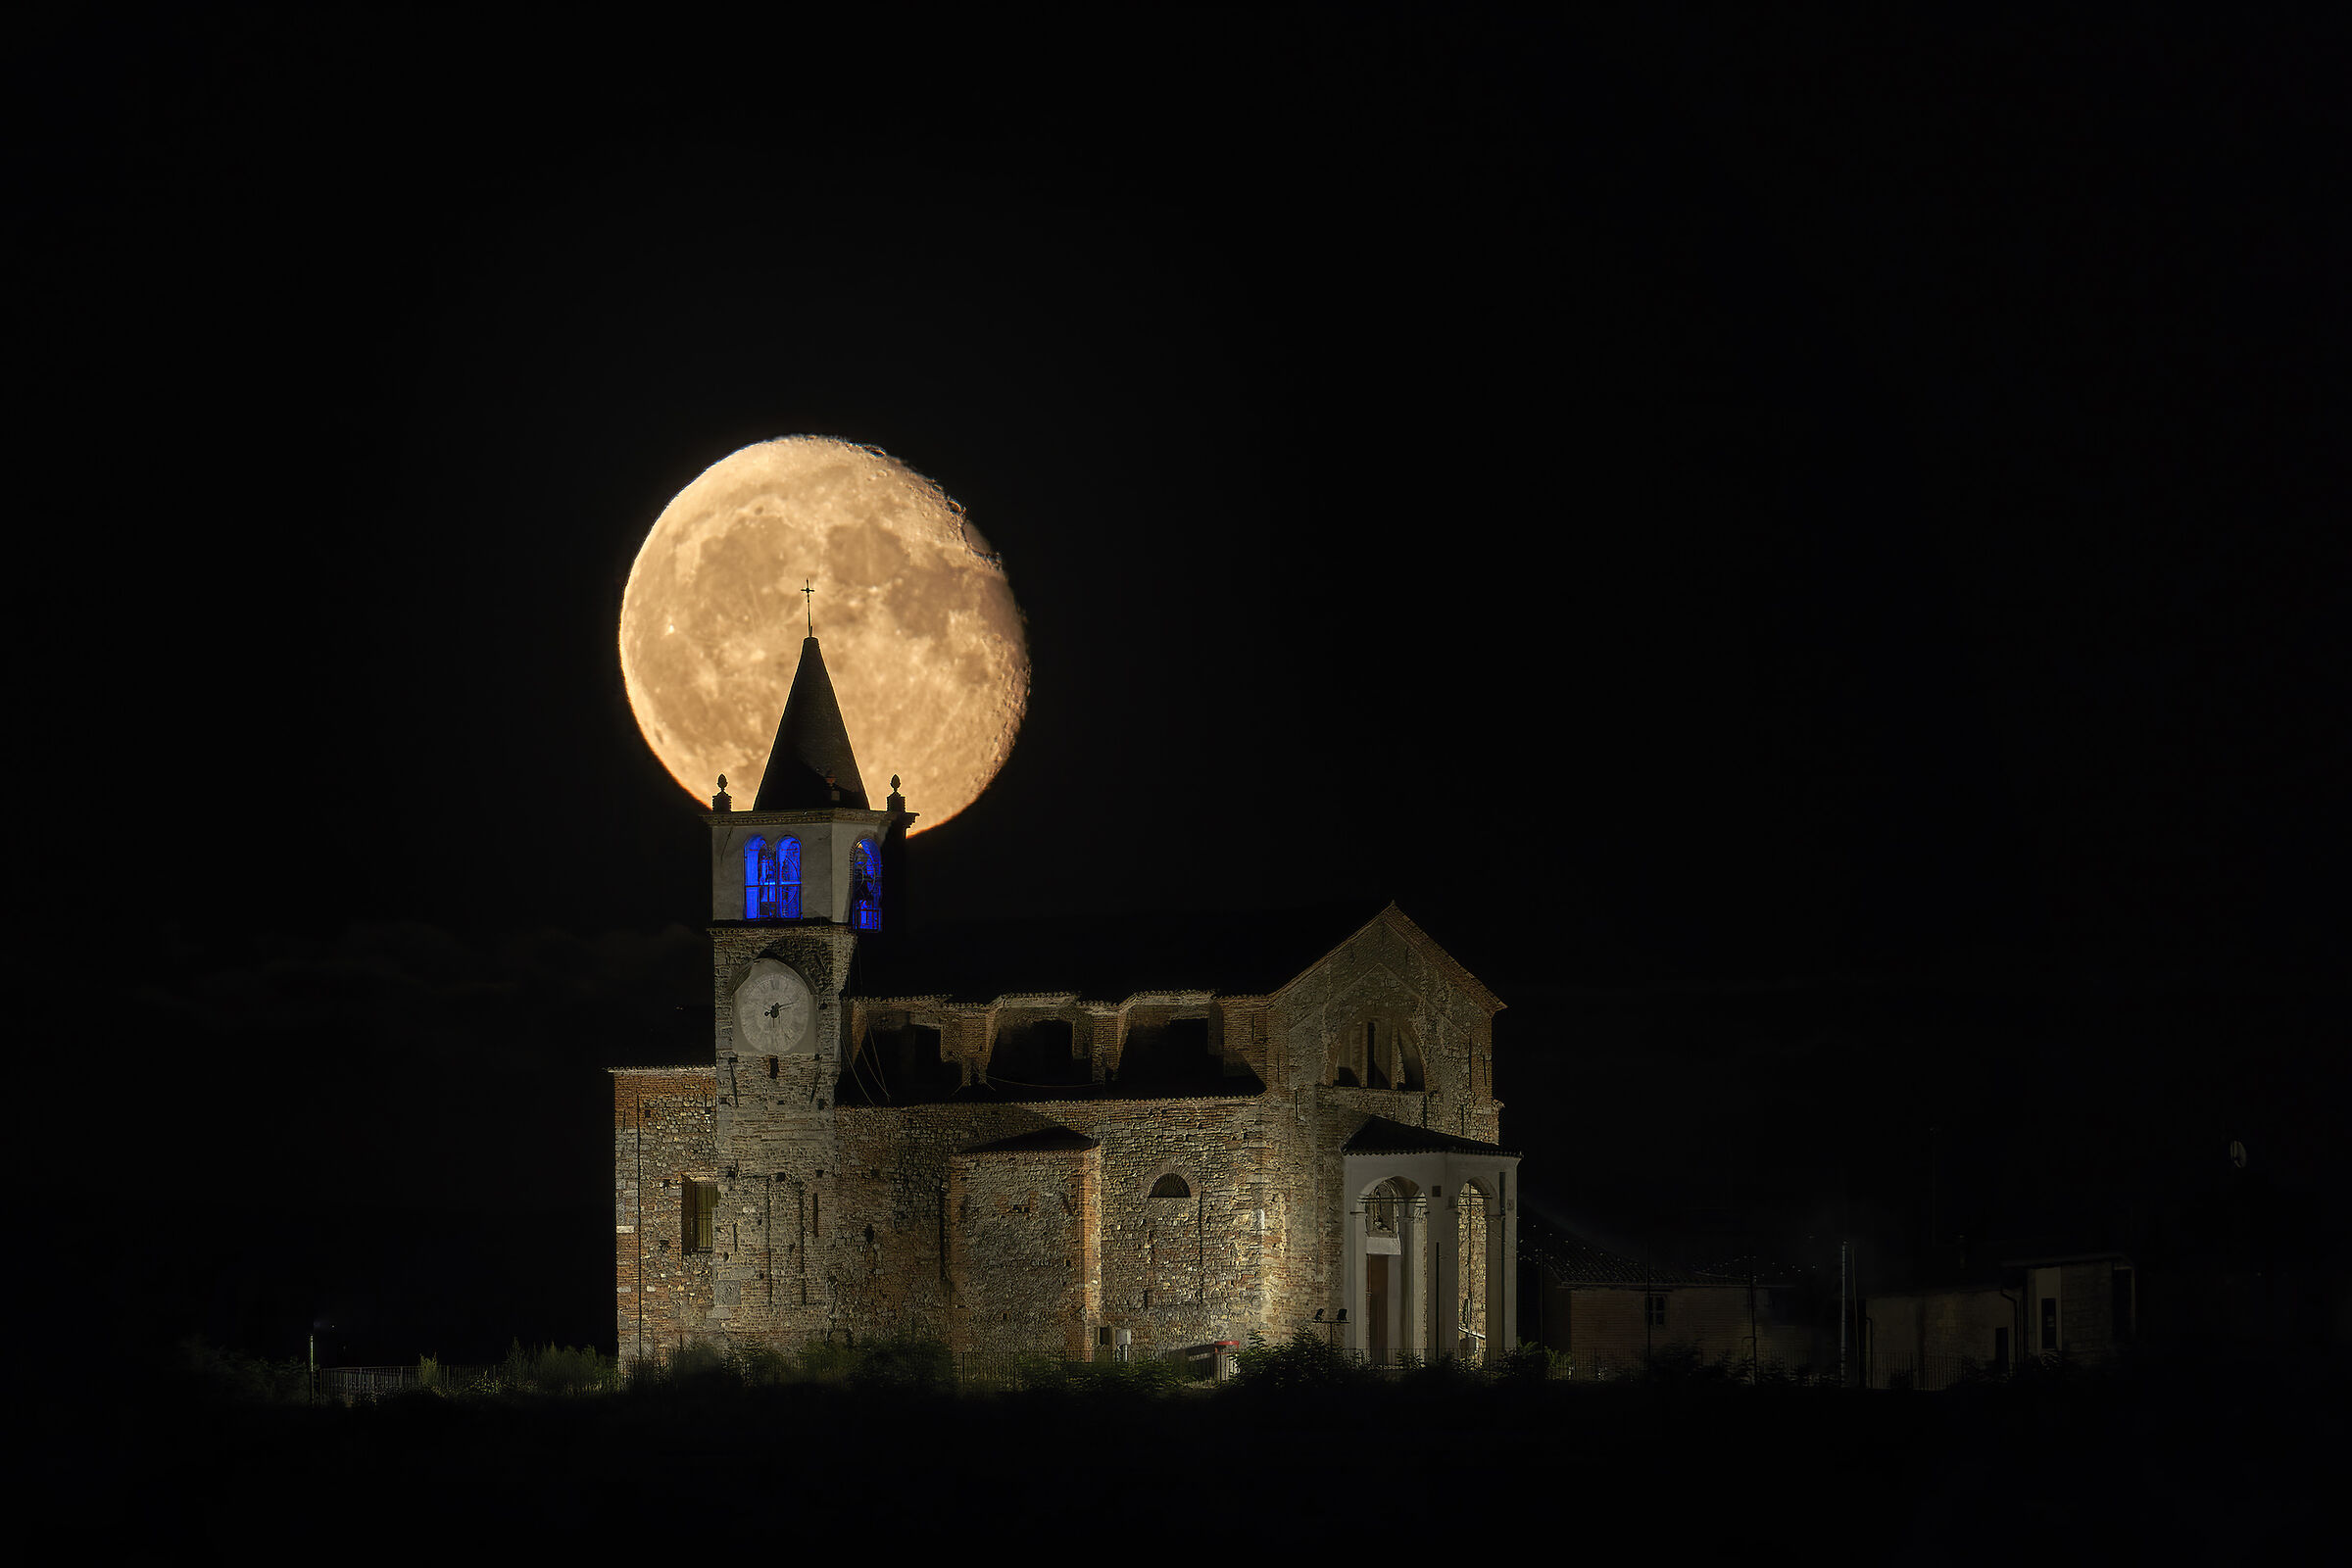 la luna sorge dietro alla chiesa del mio paese...